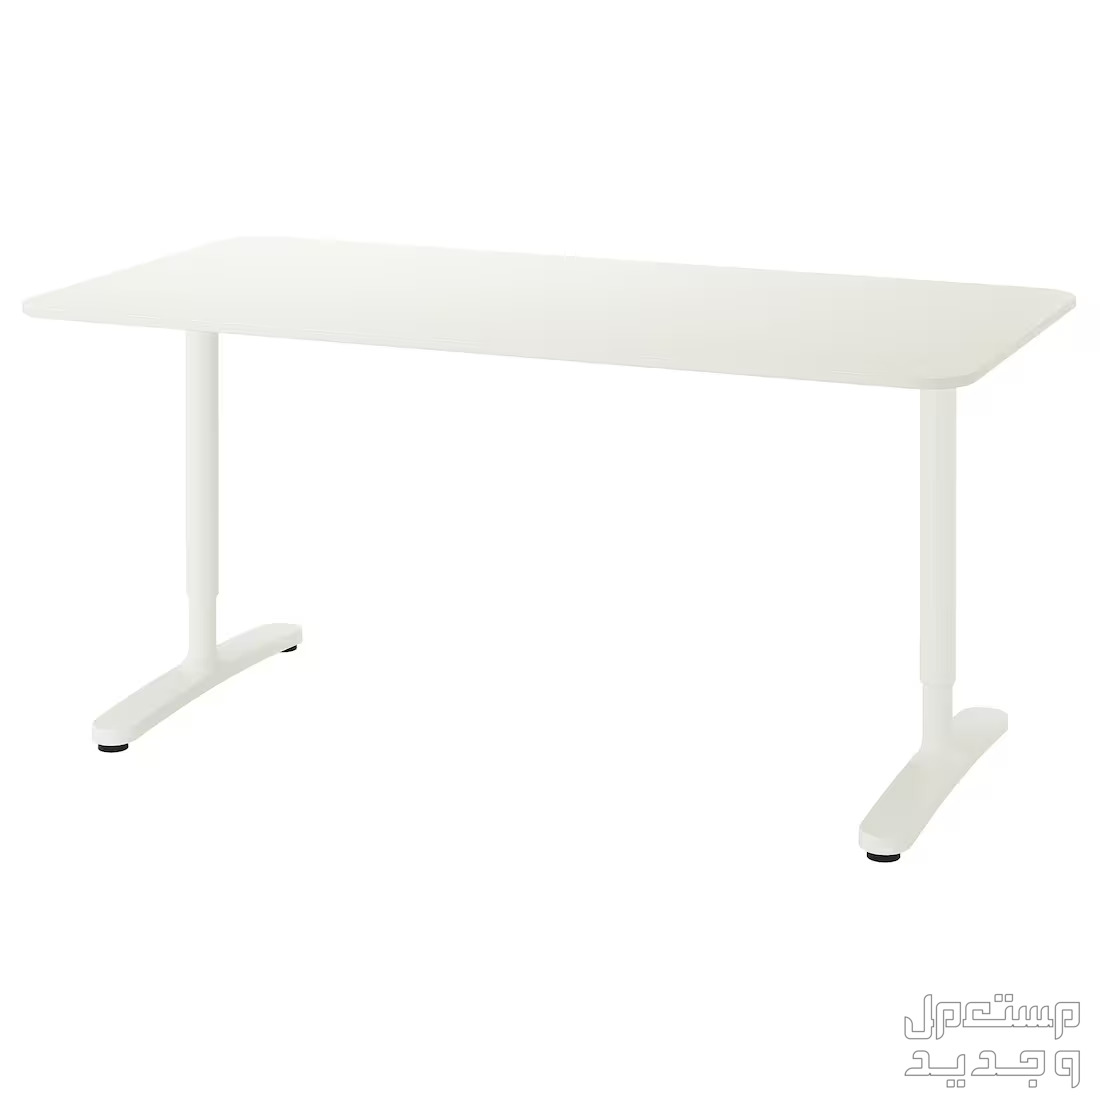 طاولات مكتب BEKANT - أبيض 160x80 سم و حجم 120x80 سم